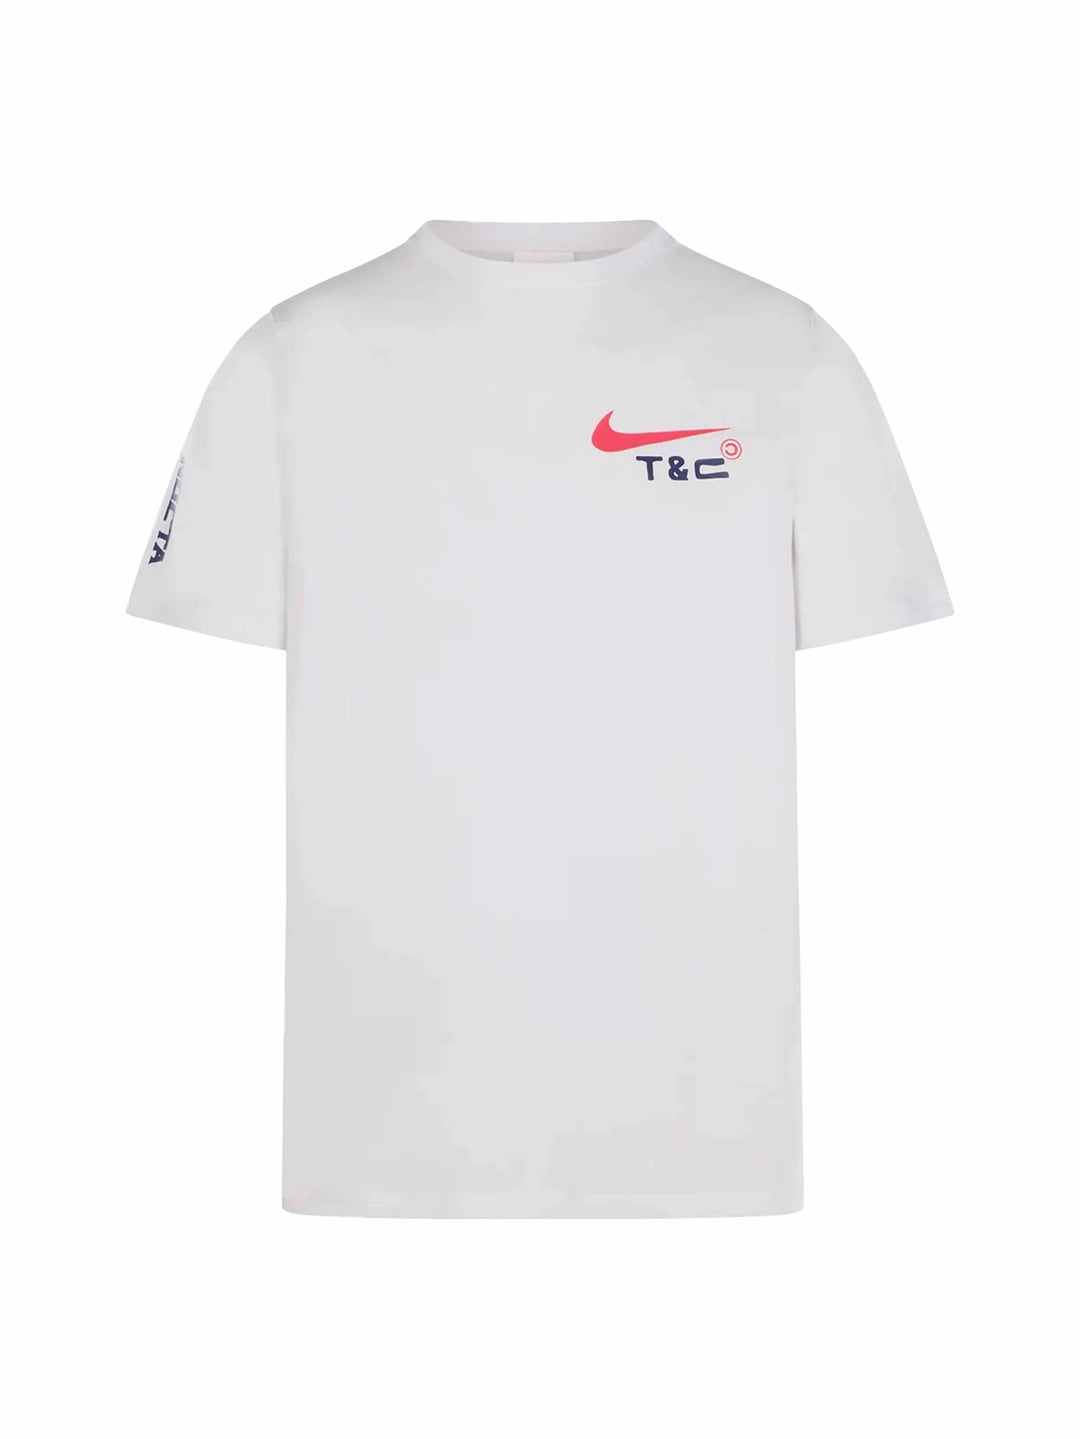 Nike x NOCTA Souvenir Cactus T-Shirt White - Prior